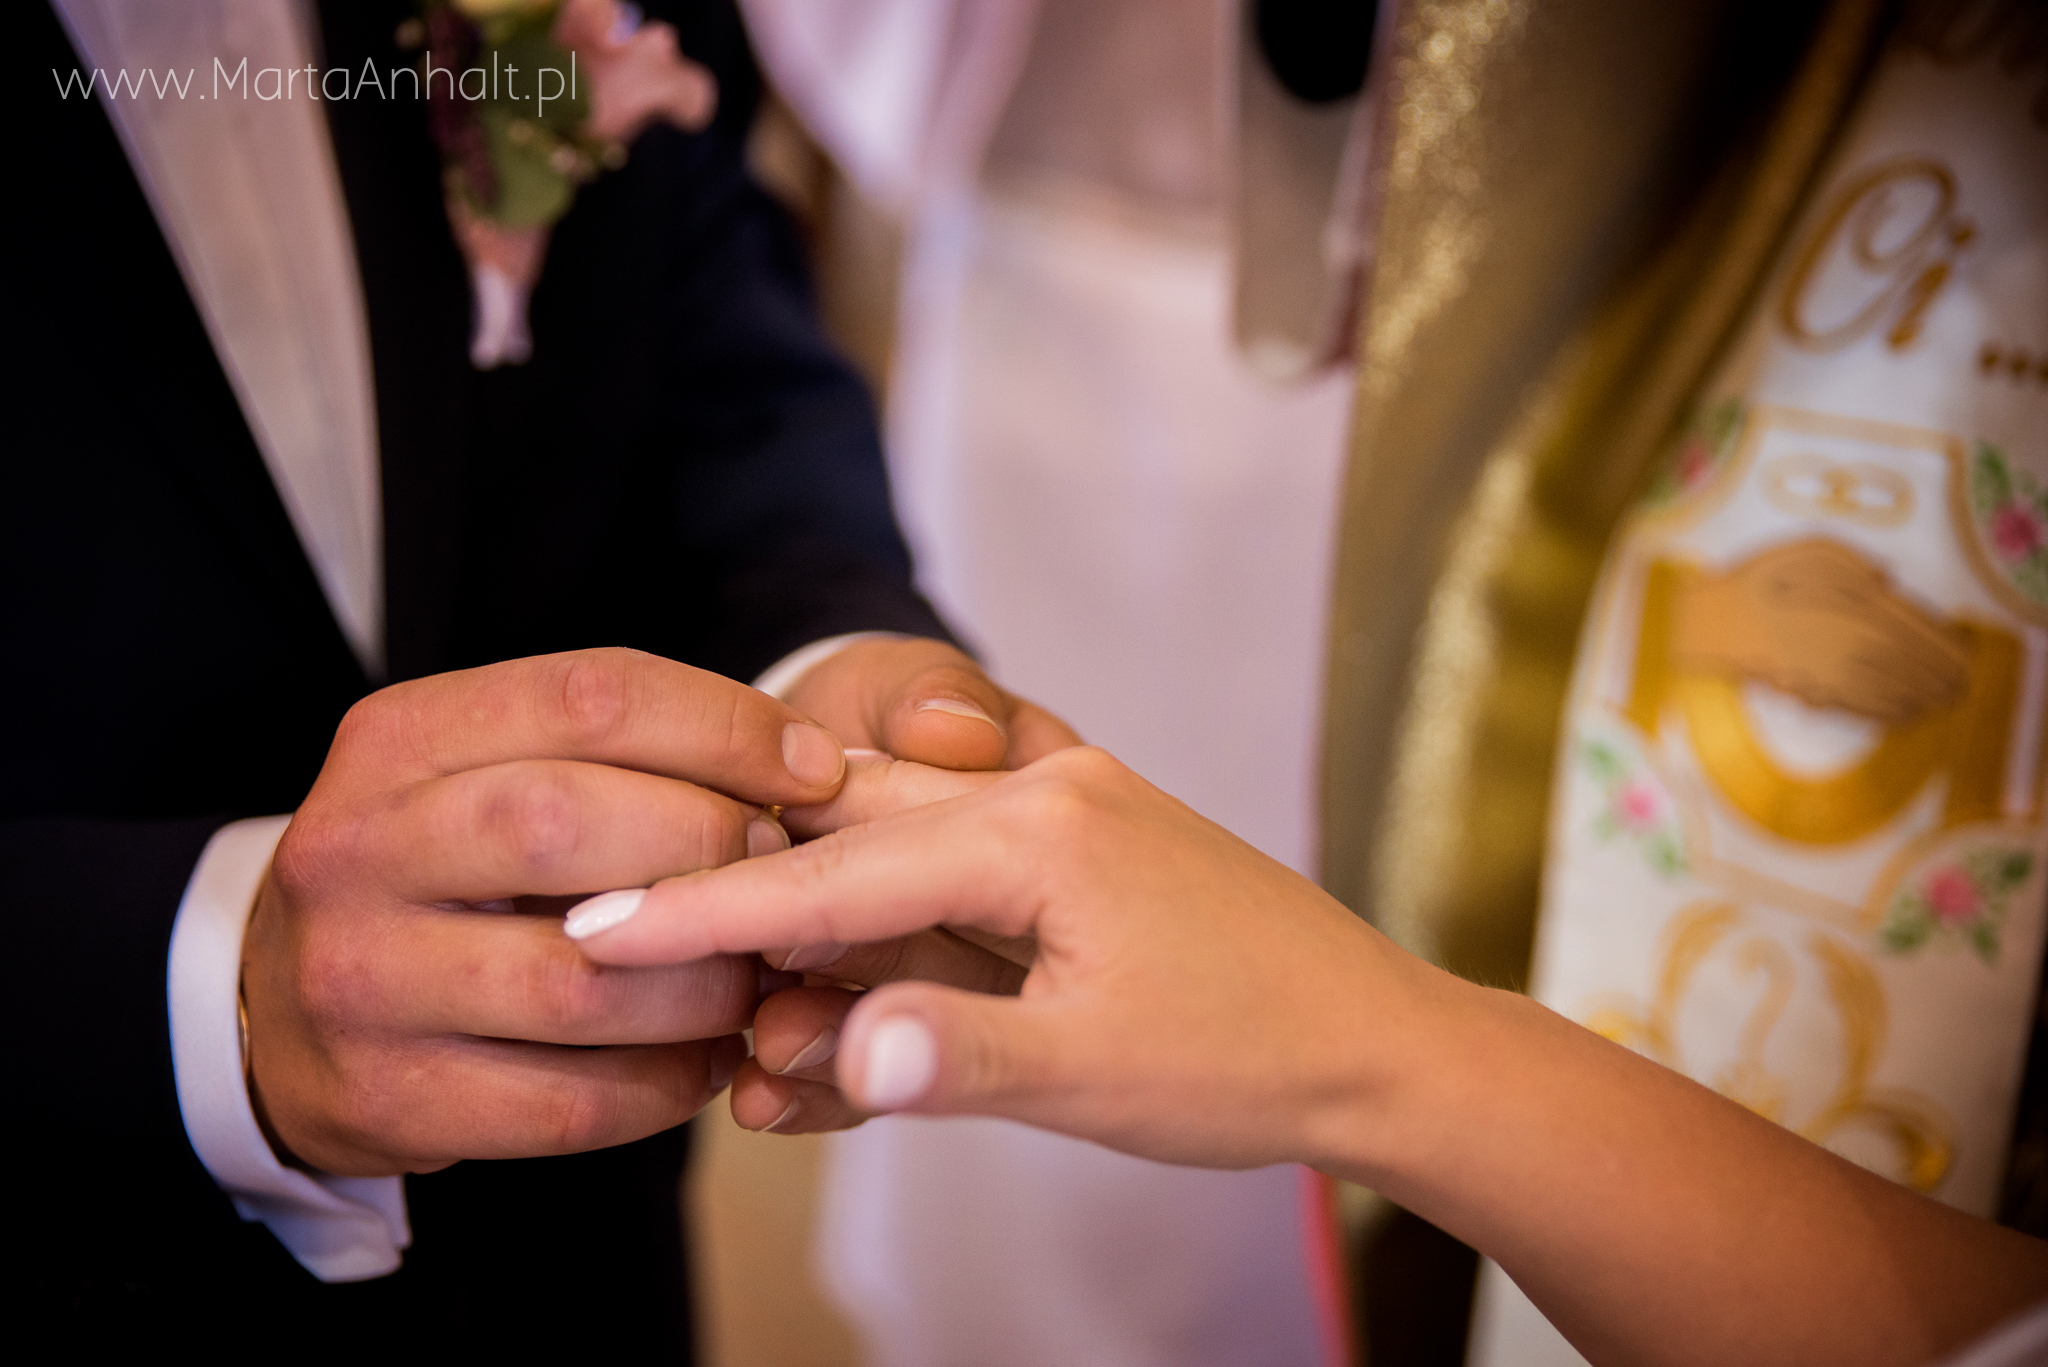 moment zakładania obrączki podczas ślubu kościelnego